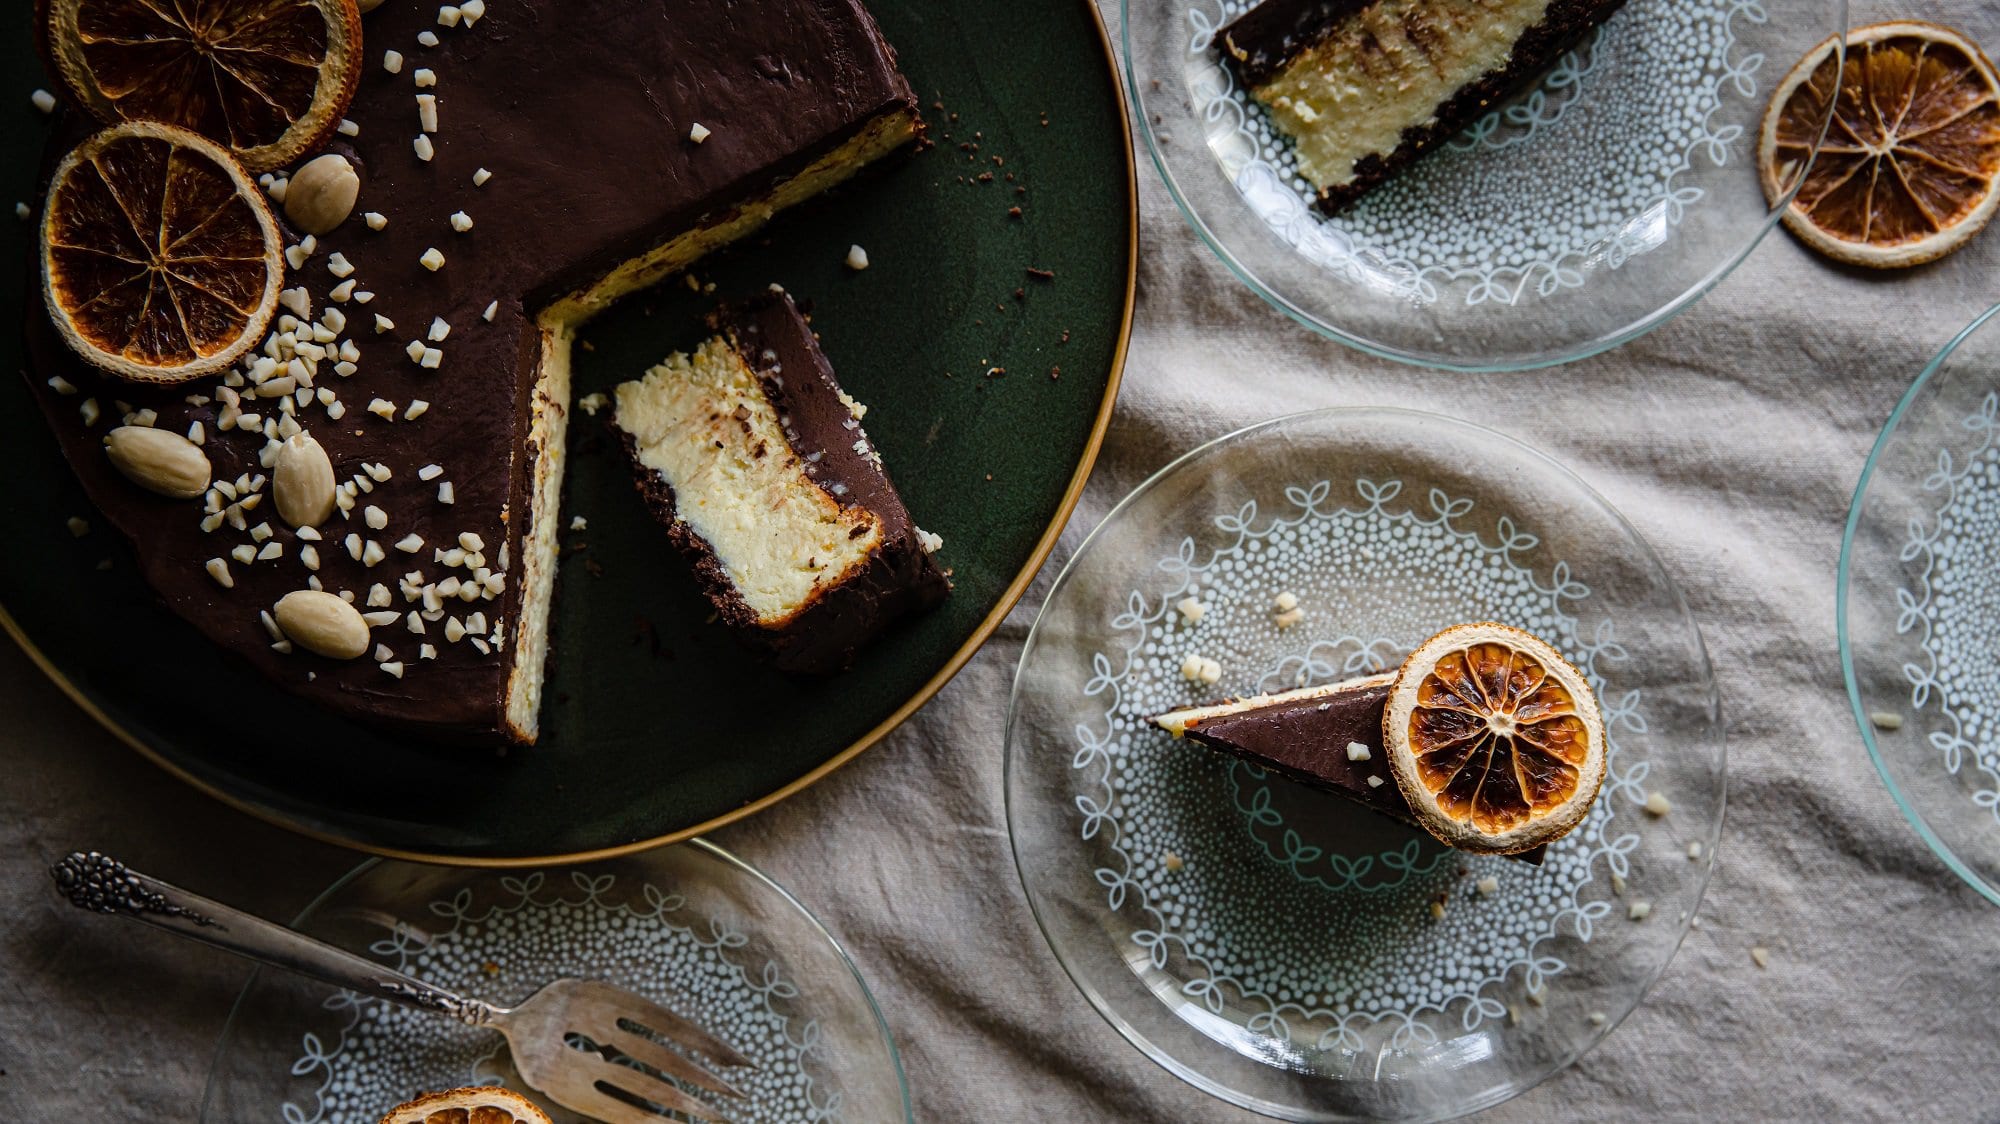 Ein angeschnittener ukrainischer Cheesecake, der auch als Lvivsky Syrnyk bekannt ist, in der Draufsicht, daneben zwei Teller mit je einem Kuchenstück.